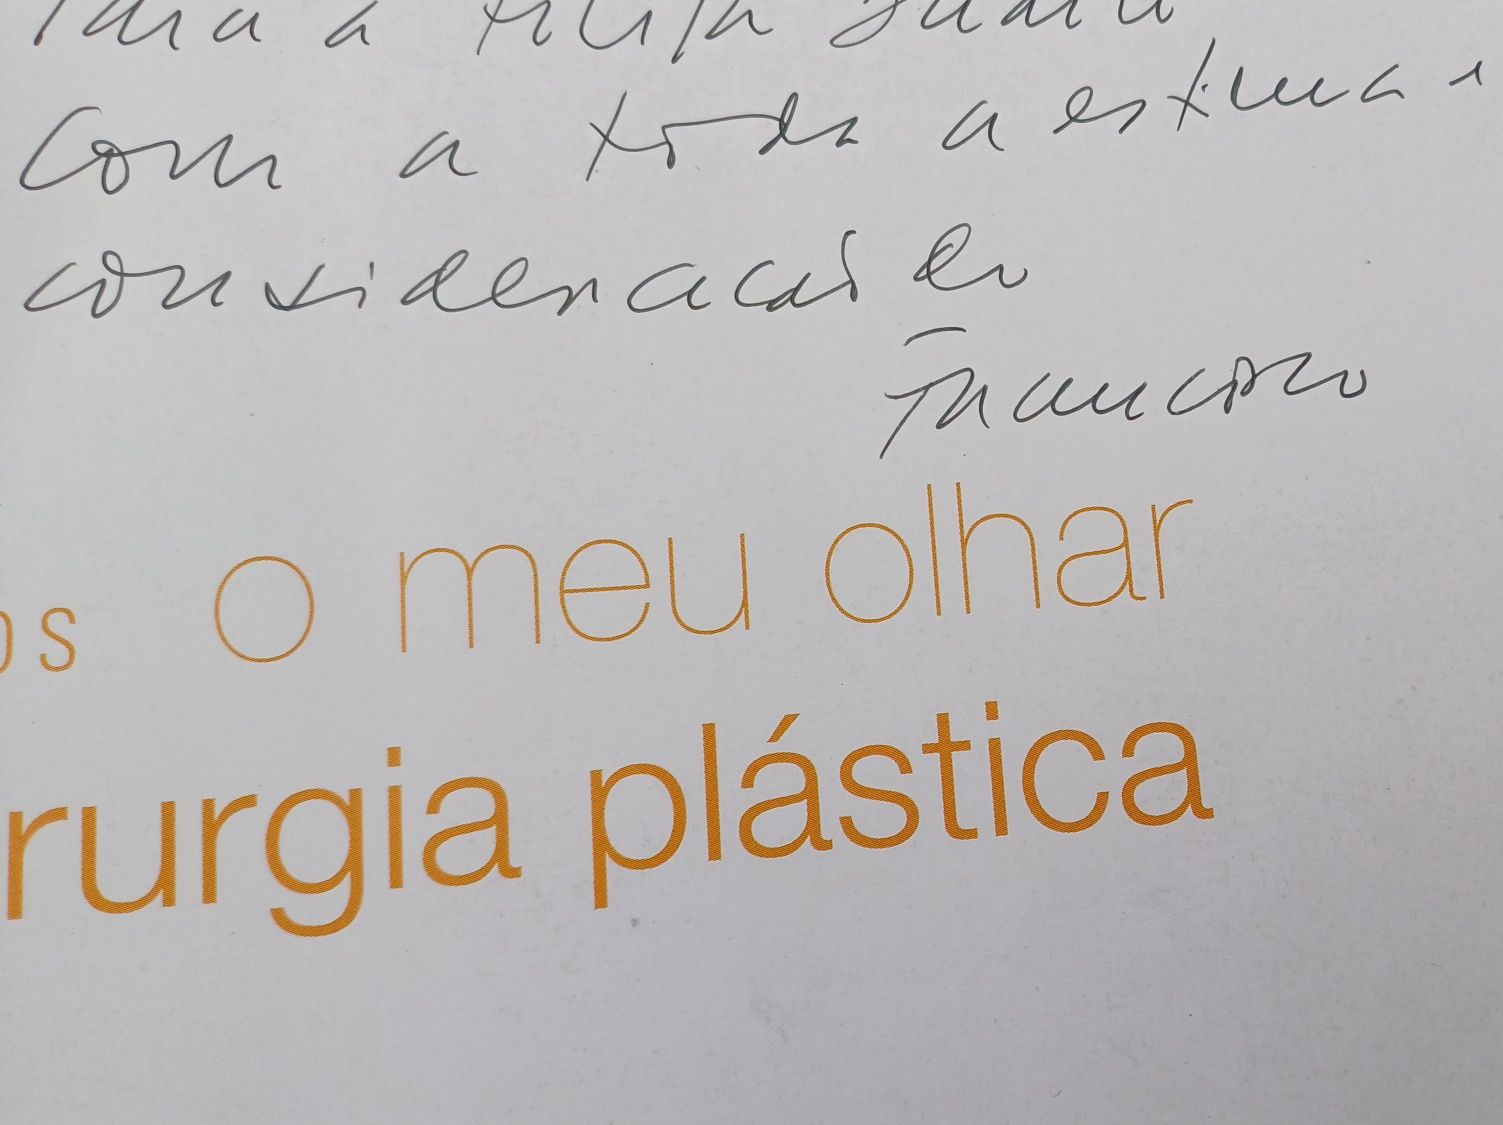 Cirurgia Plástica Francisco Campos Livro com assinatura do Próprio